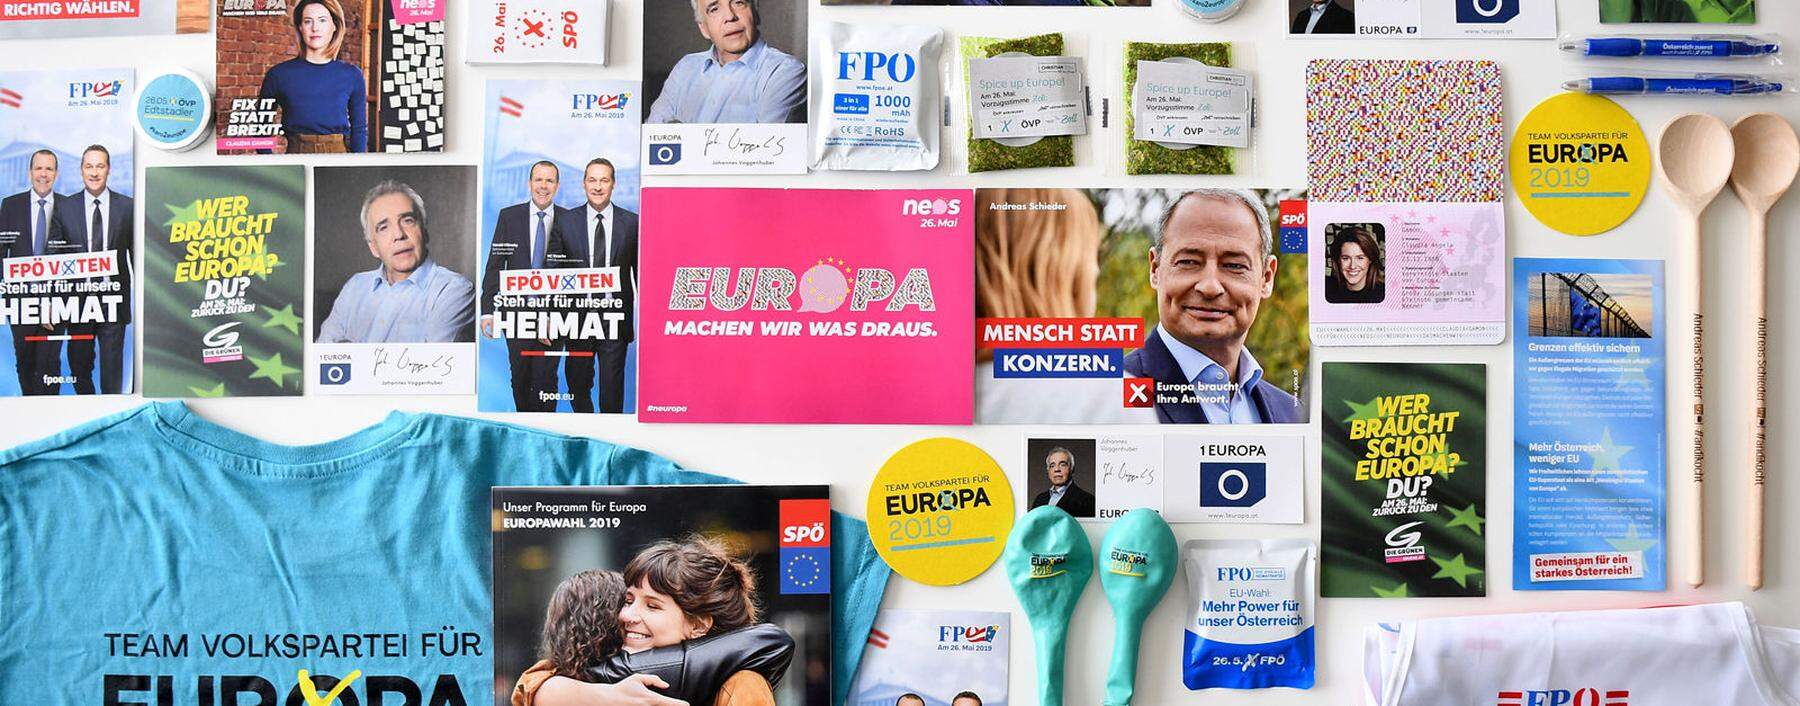 Archivbild: Werbegeschenke der Parteien im vergangenen Europawahlkampf